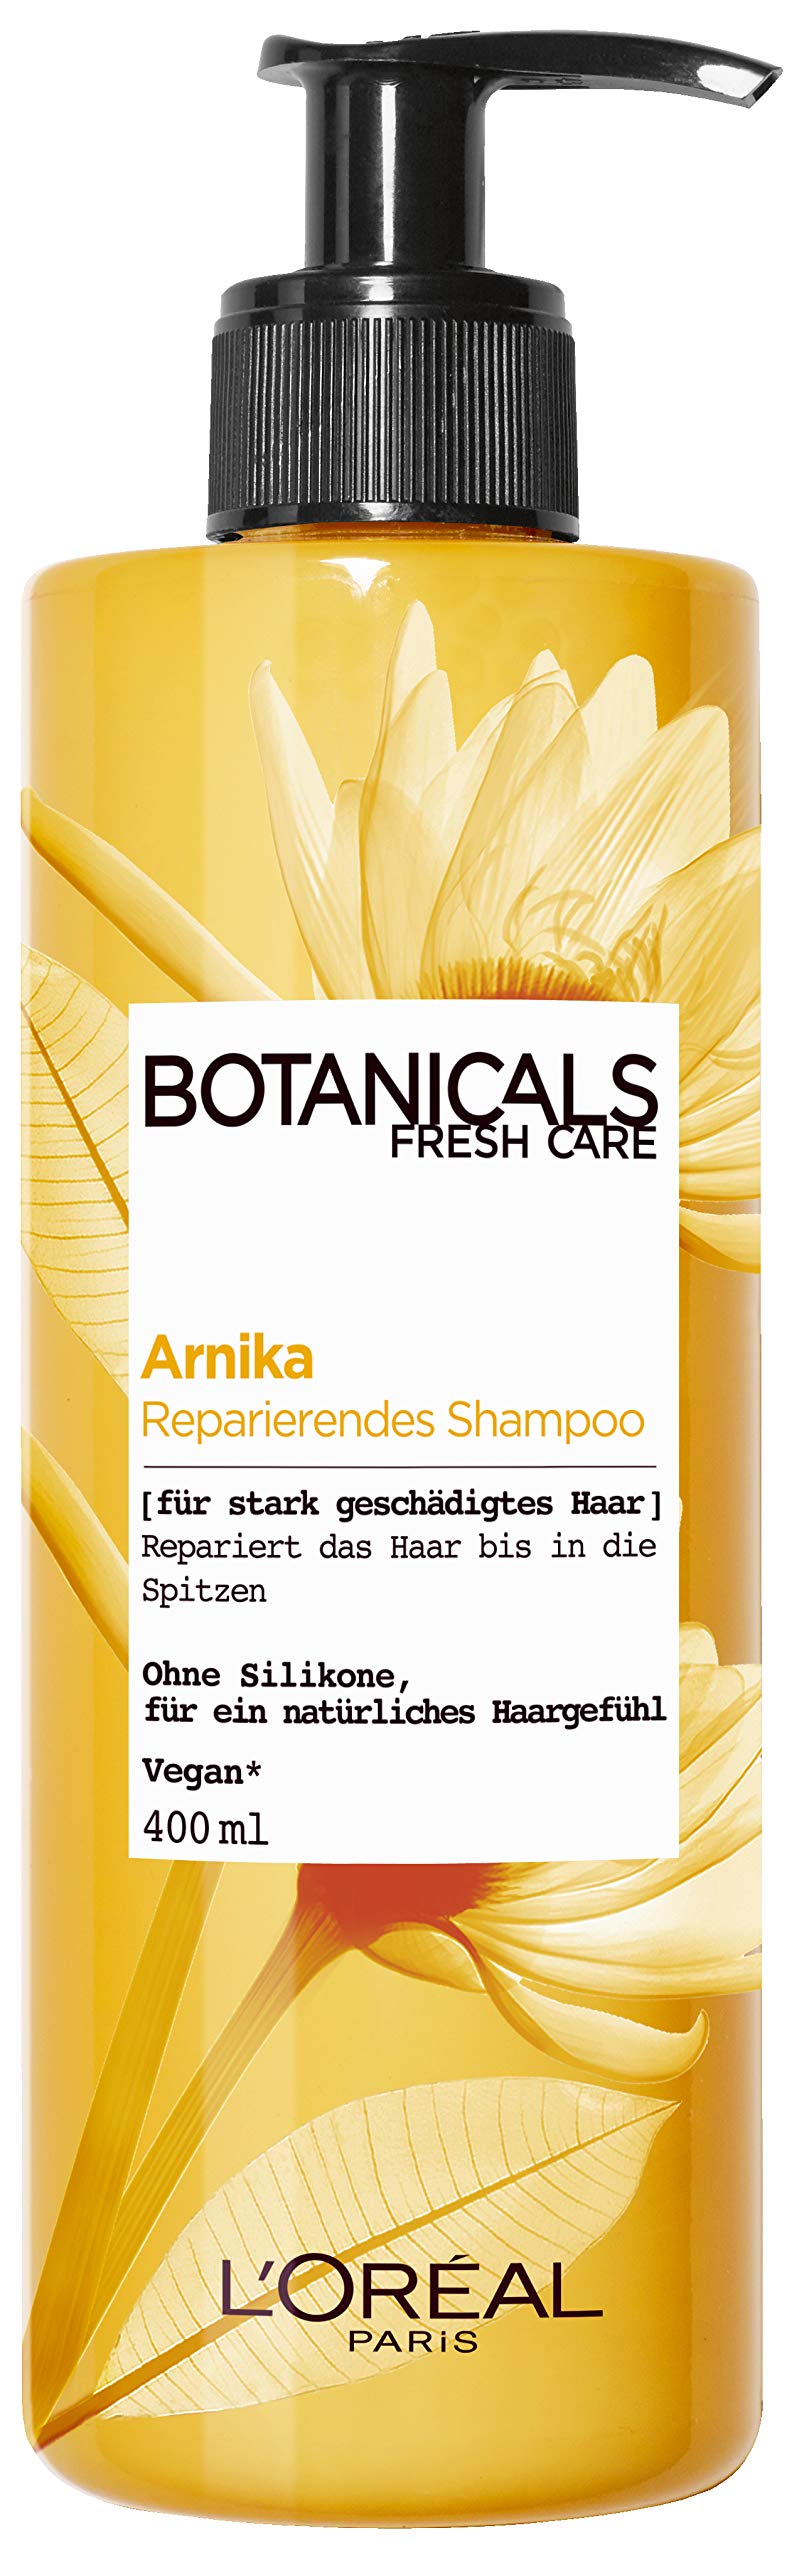 loreal botanicals szampon do włosów farbowanych